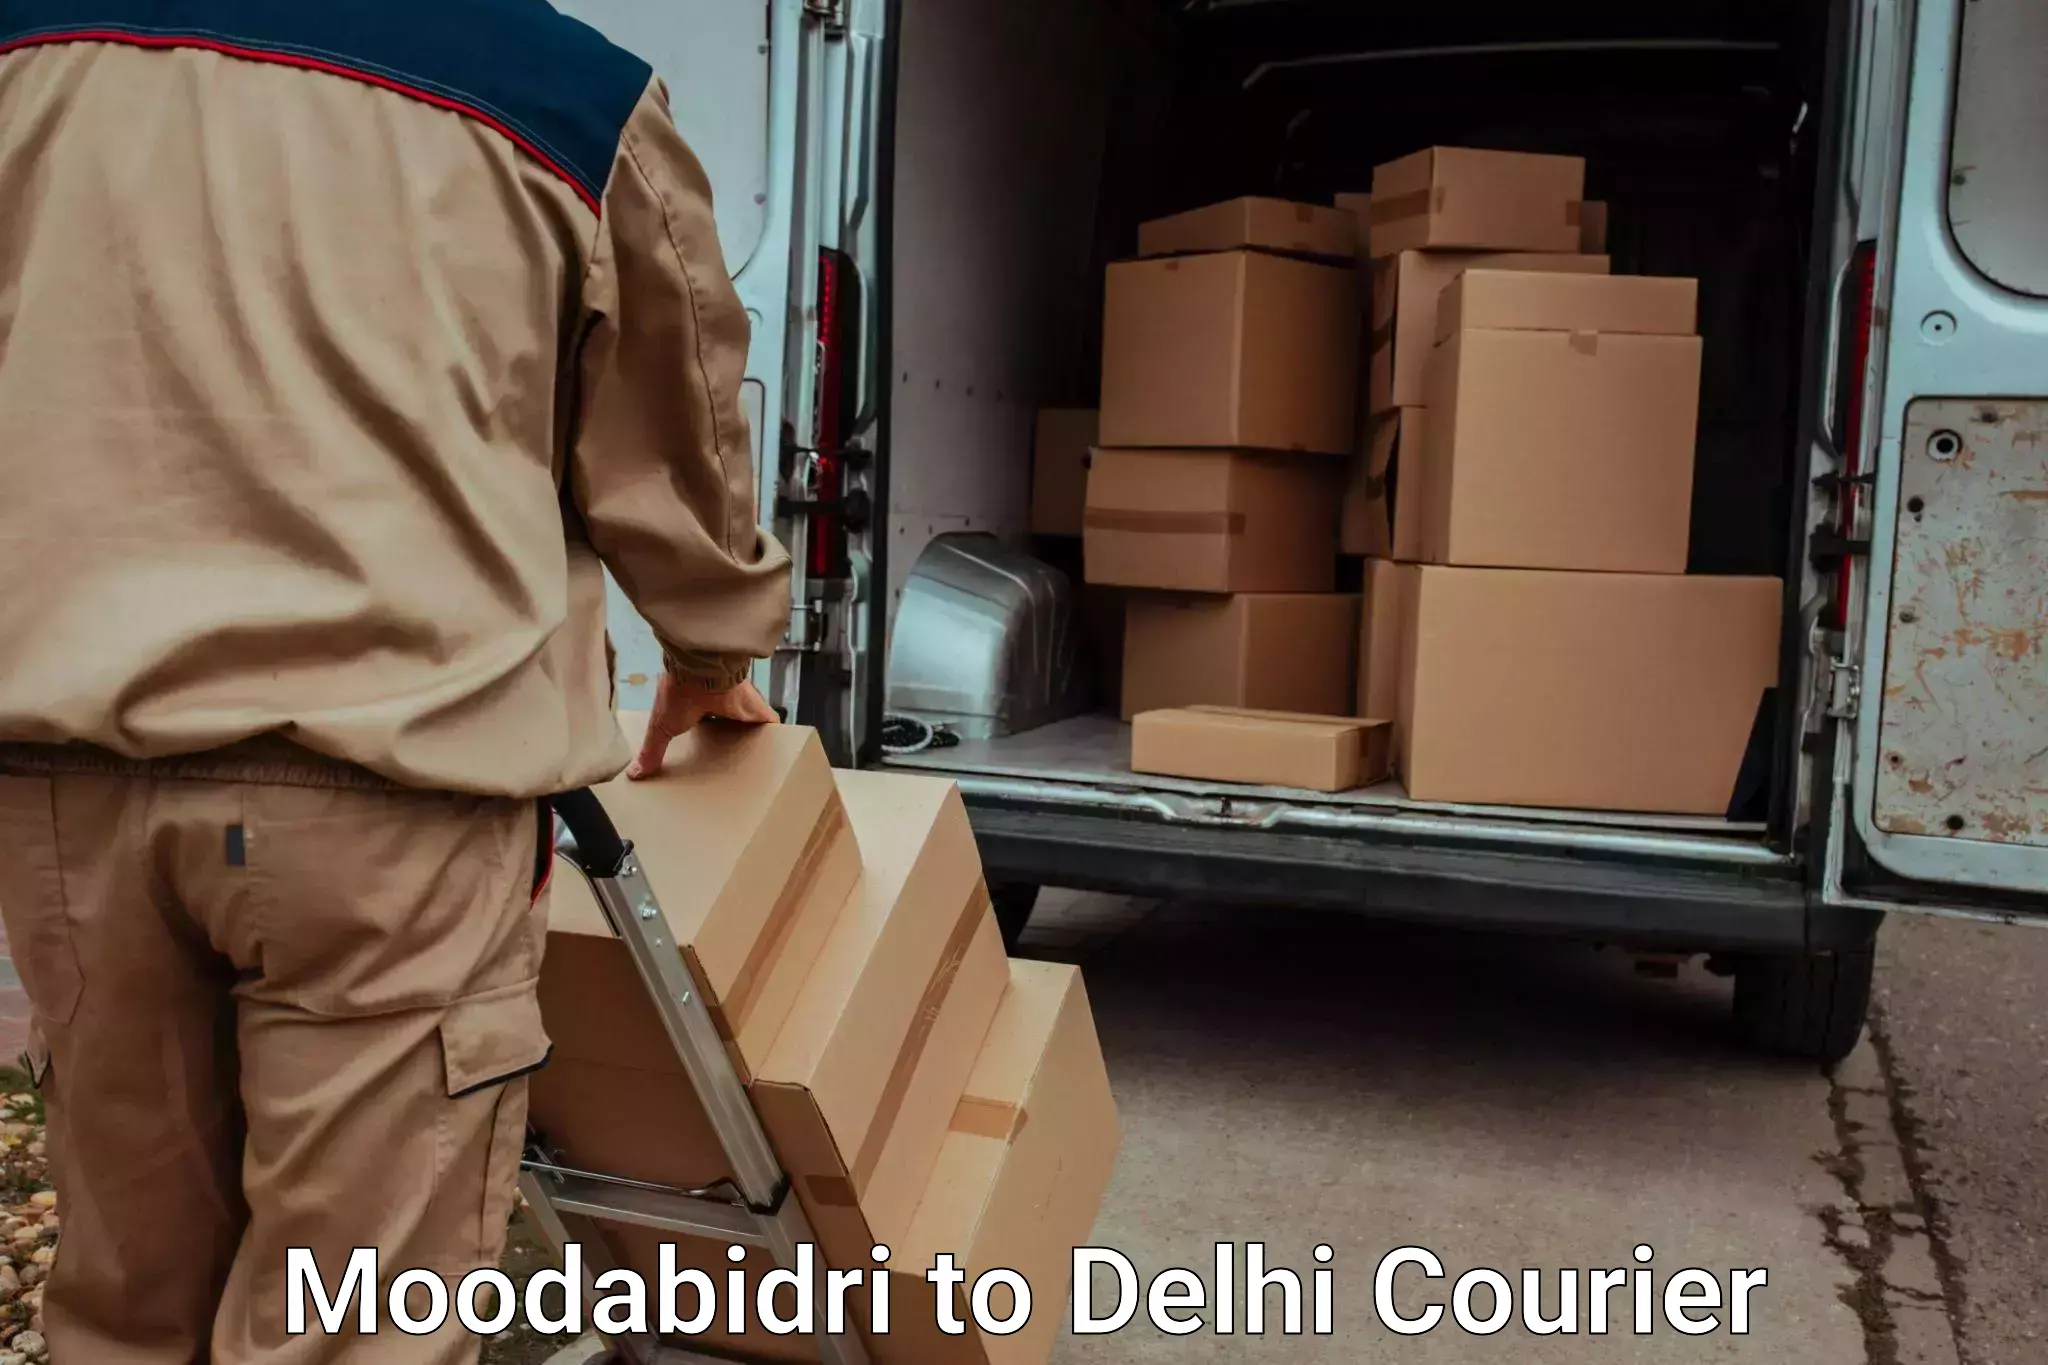 Furniture delivery service Moodabidri to University of Delhi